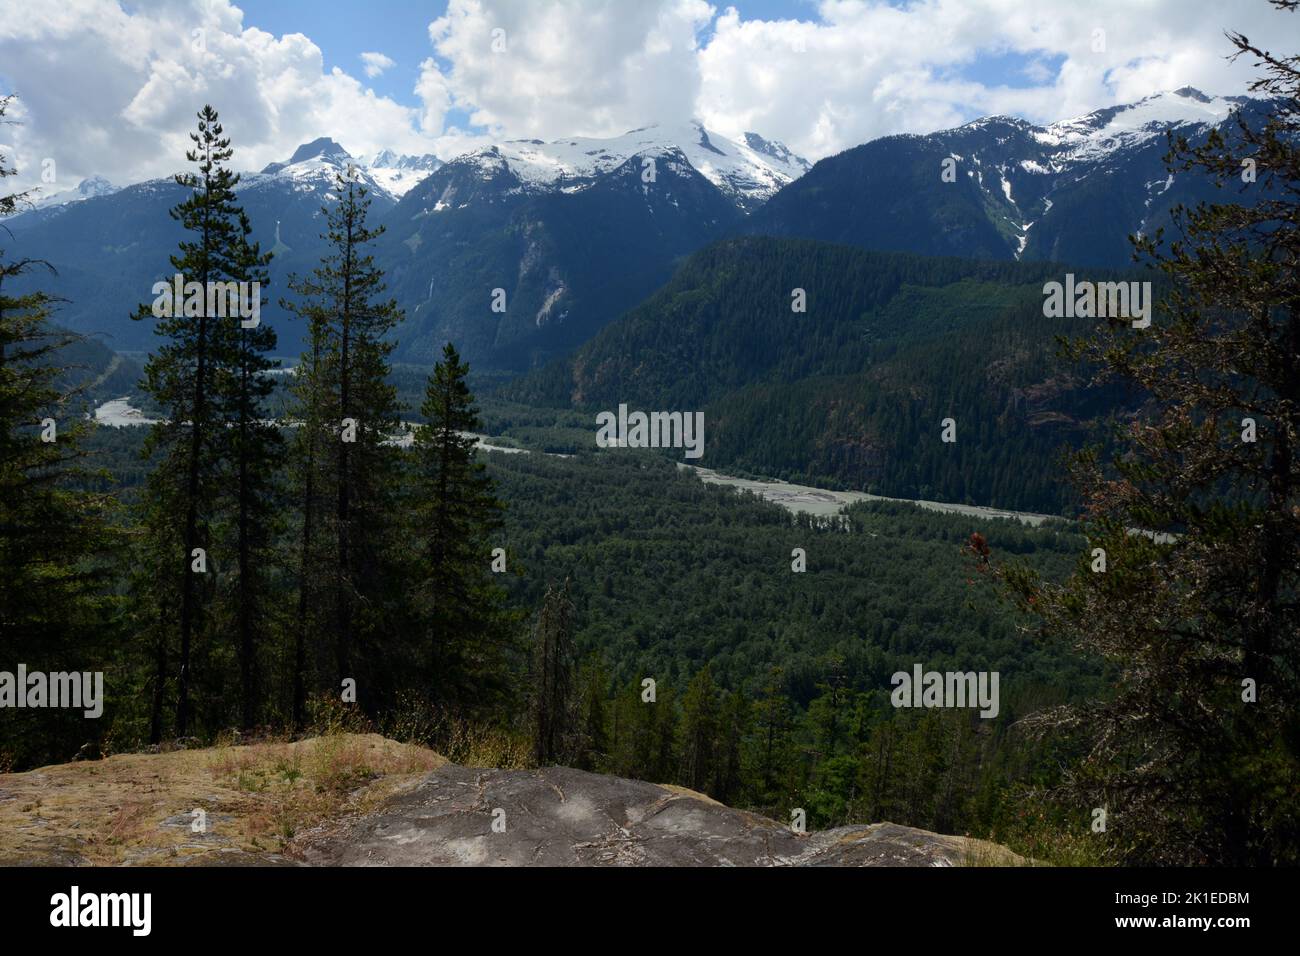 El río Squamish y el valle superior que atraviesa la cordillera Tantalus de las montañas de la costa de British Columbia, Canadá. Foto de stock